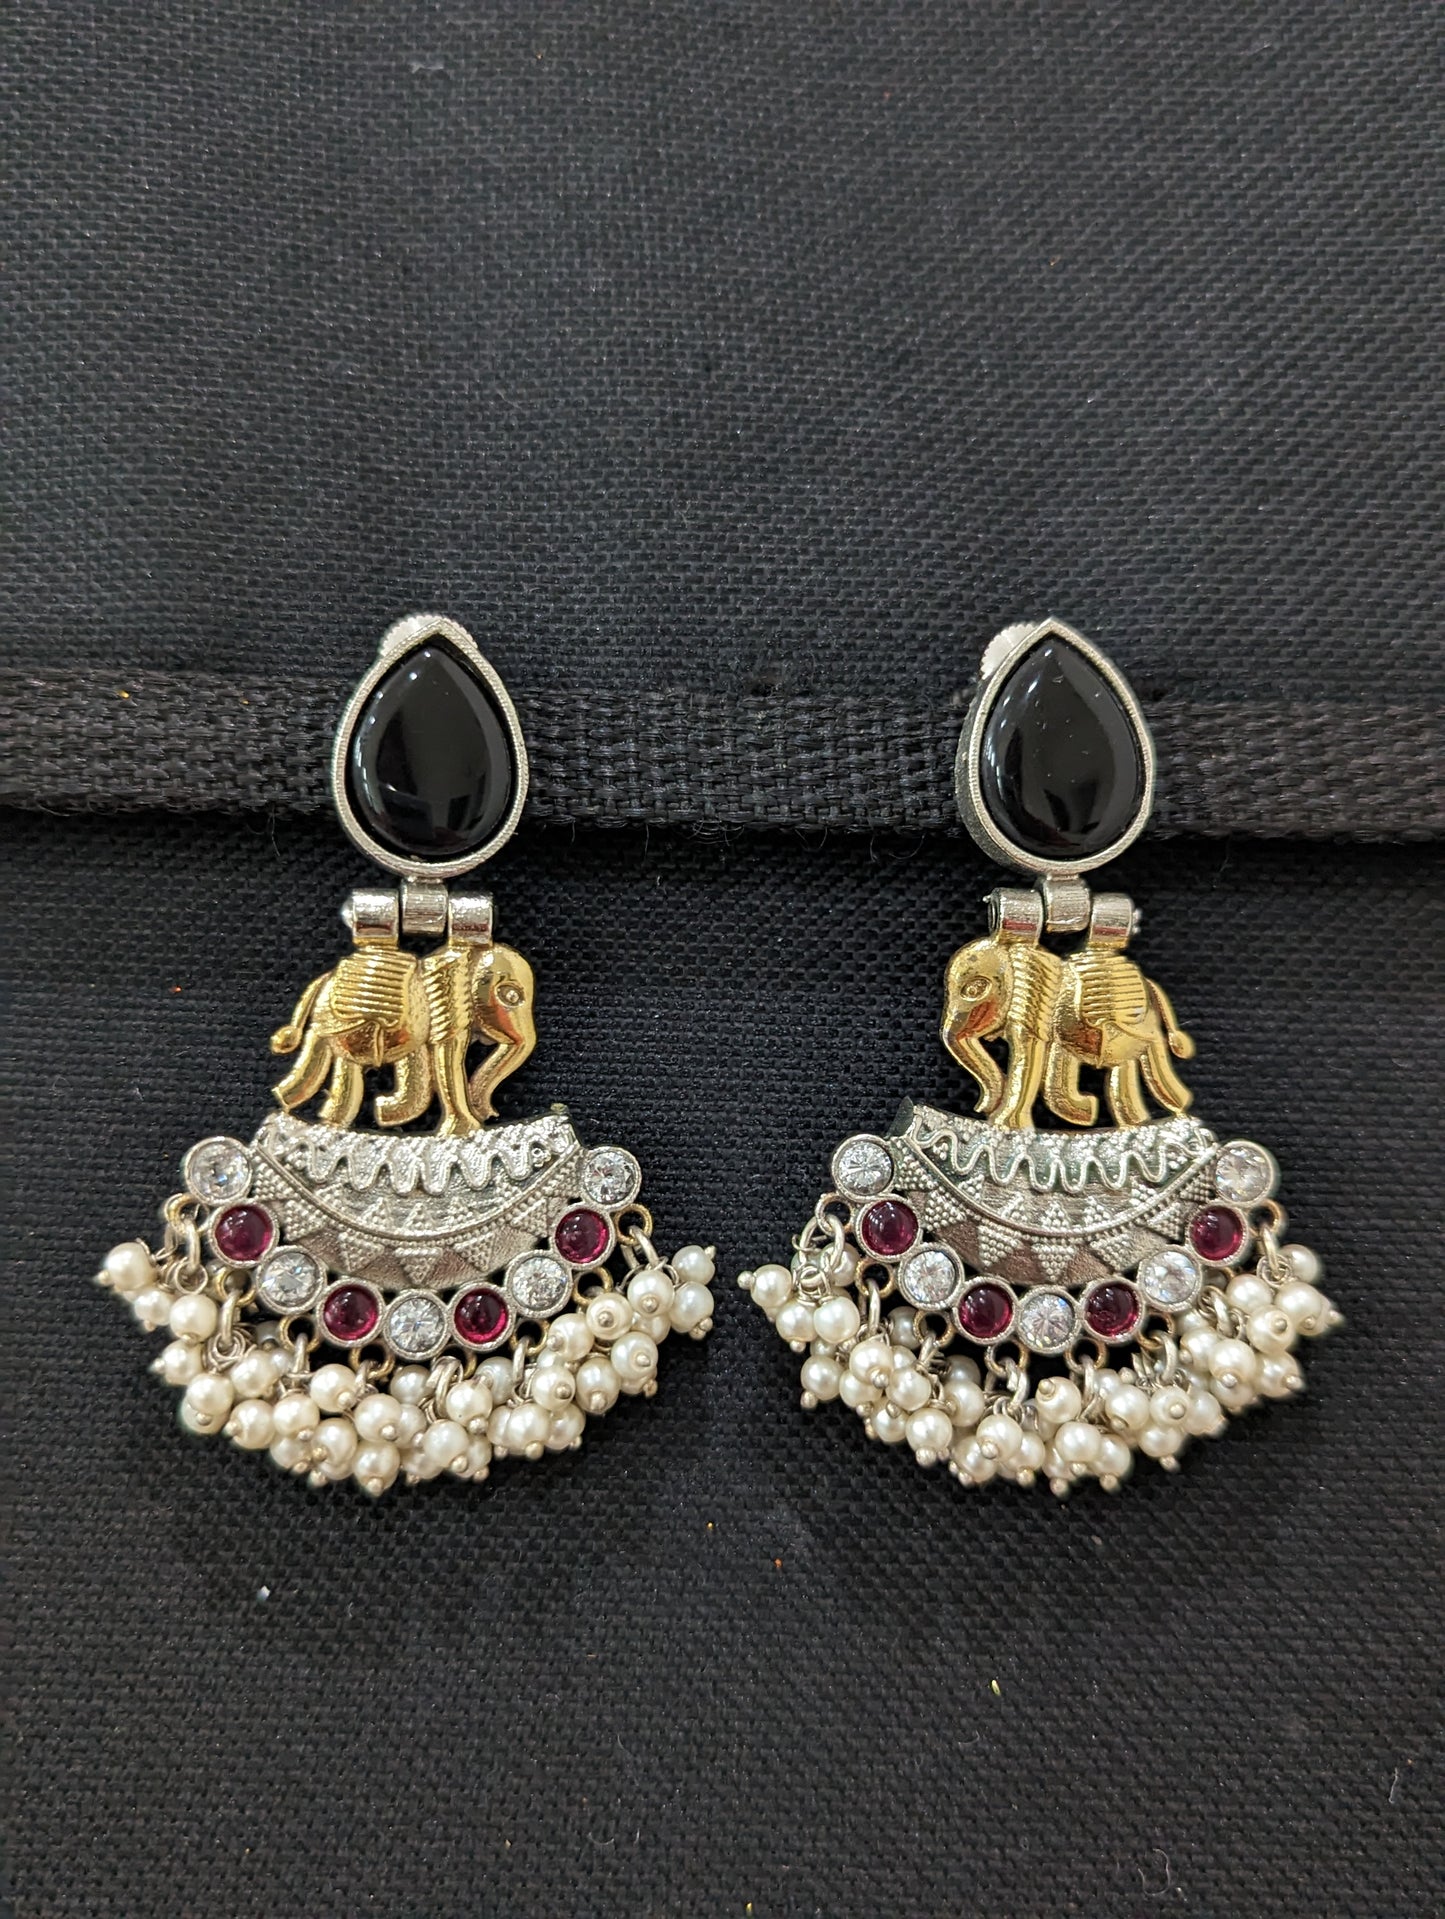 Dual tone German Silver Elephant Earrings